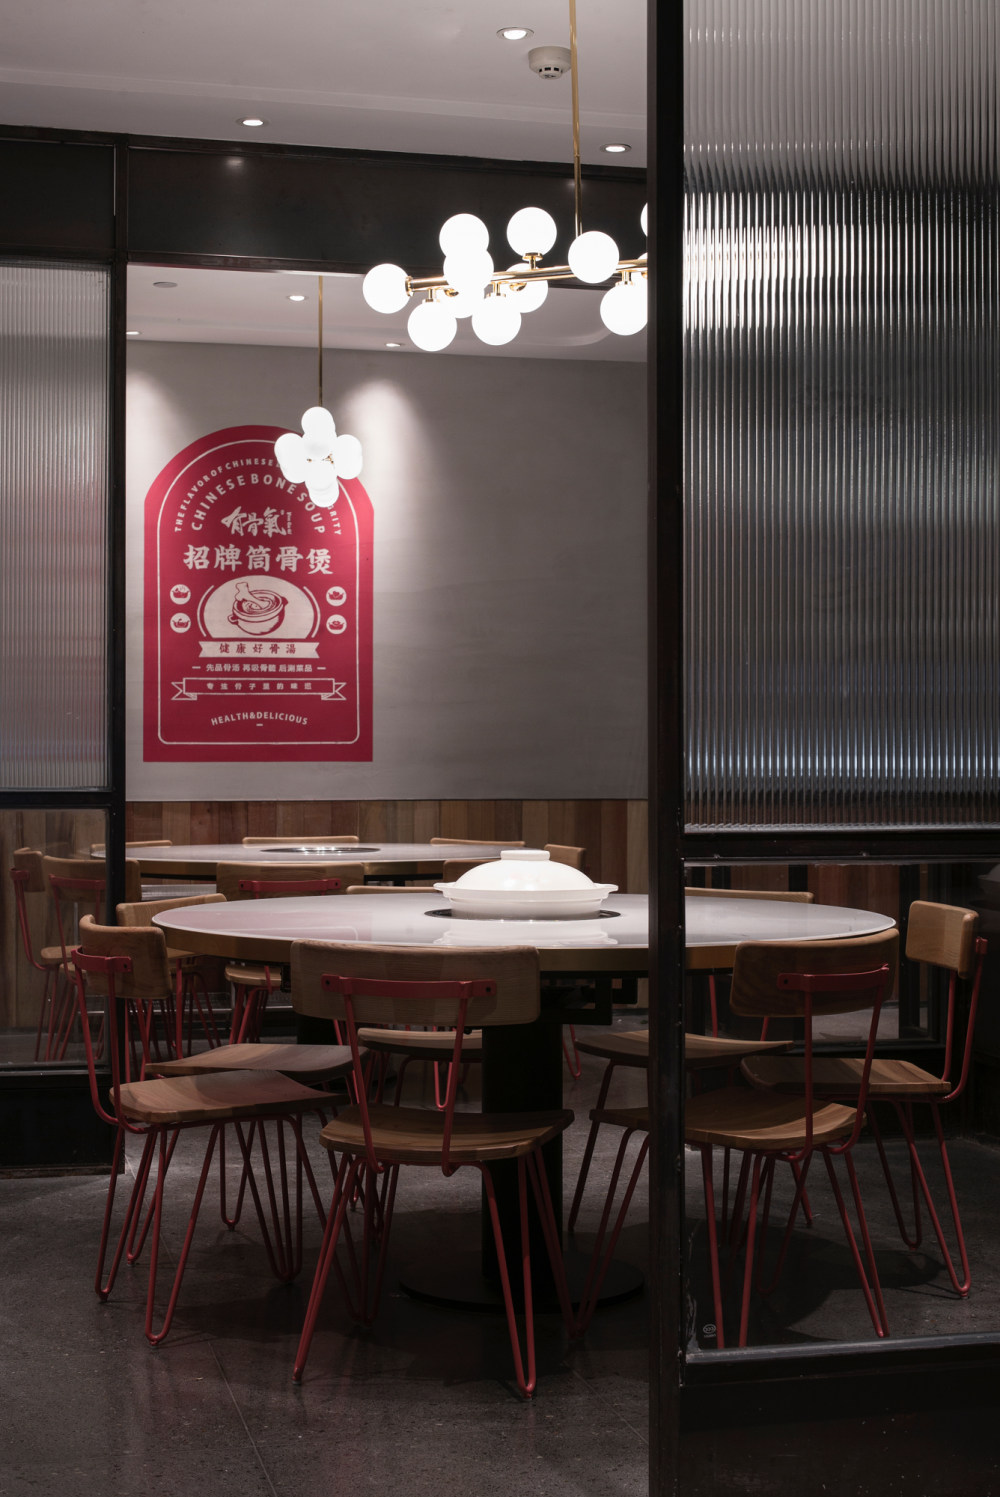 有骨气餐厅-杭州合思室内设计有限公司_L1004695.jpg